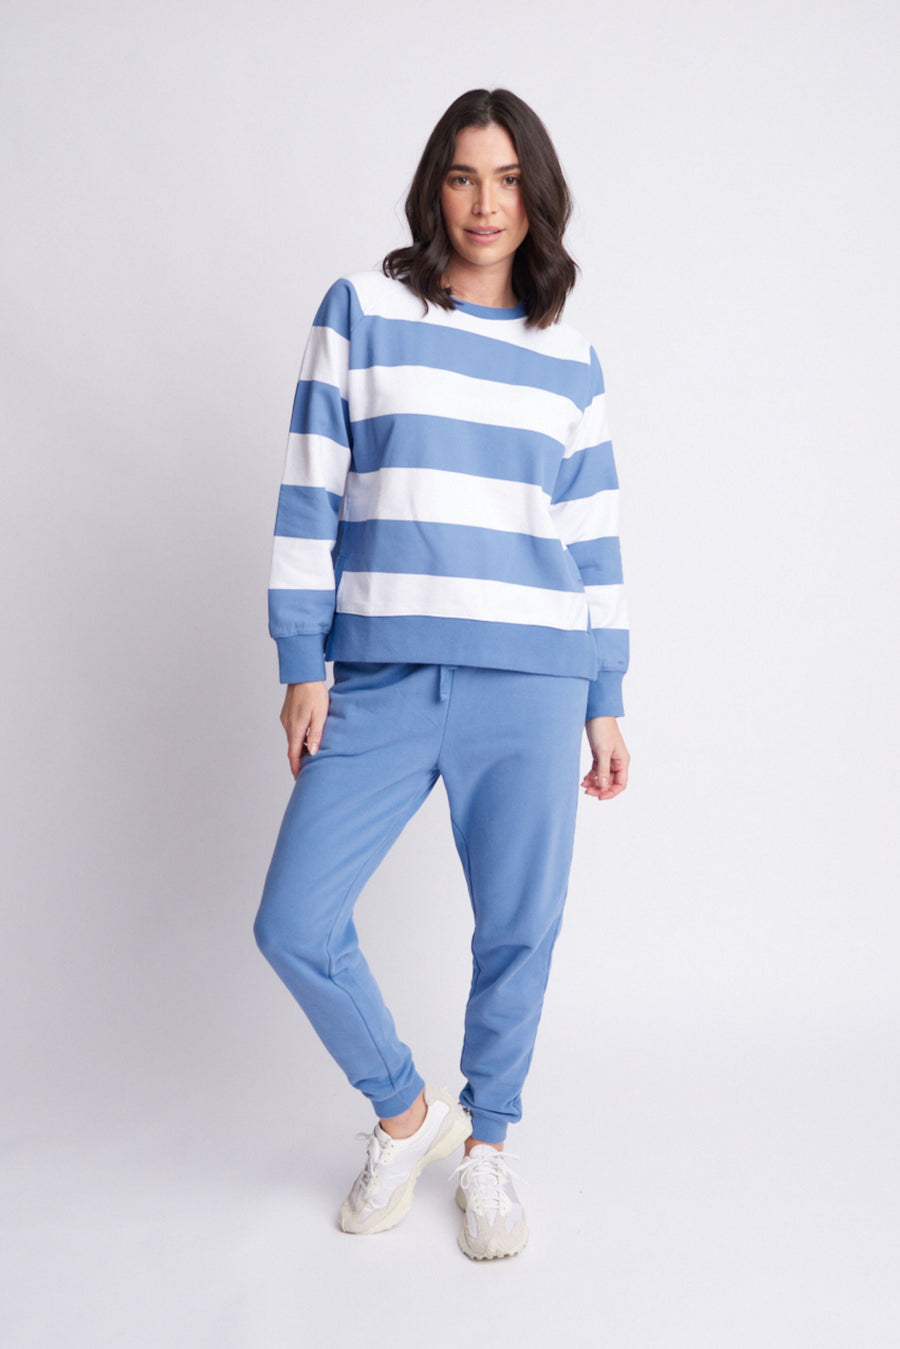 Cloth + Paper + Scissors - Fleece Stripe Side Split Sweater - Denim/Blue